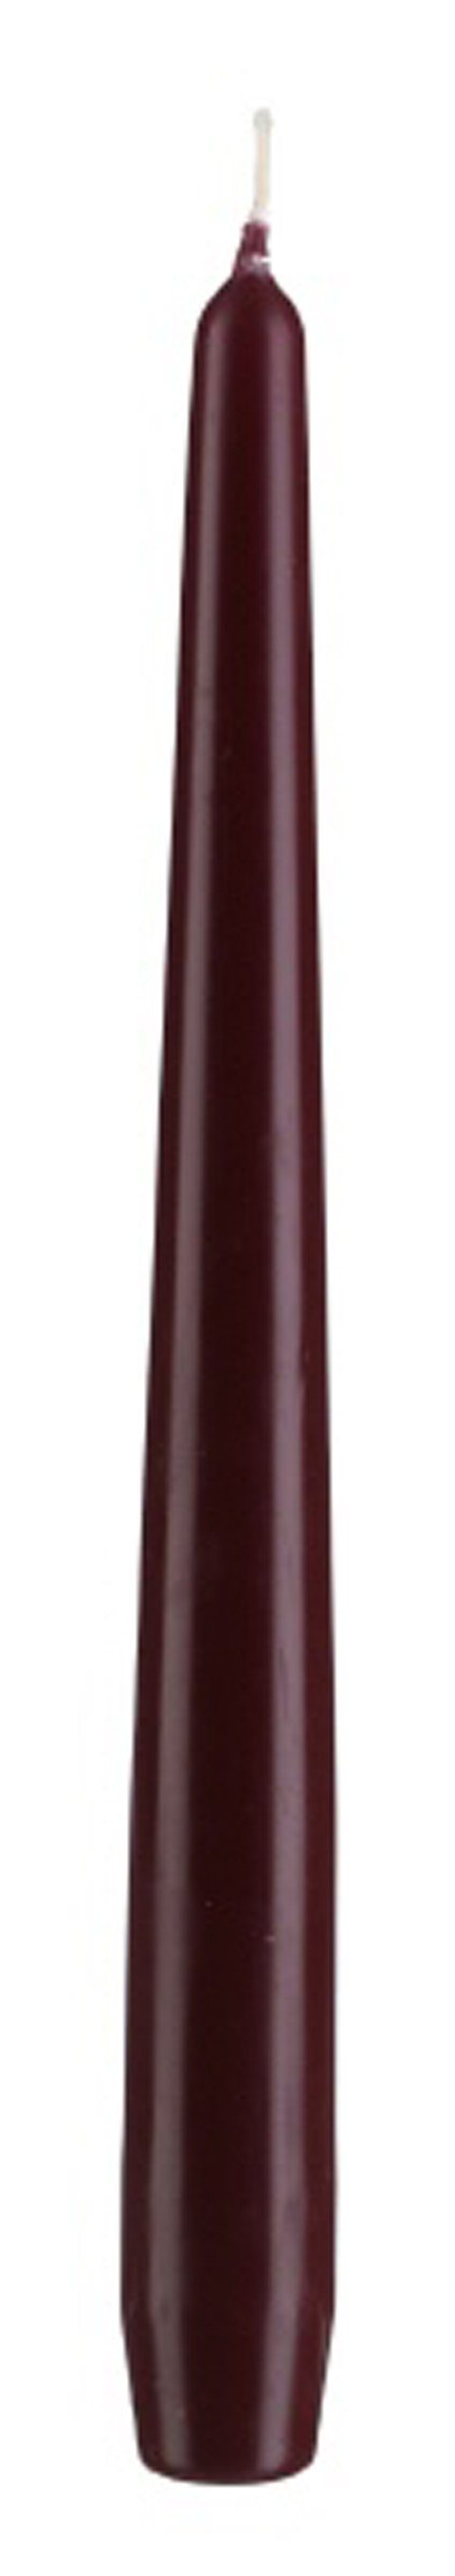 Kopschitz Kerzen Spitzkerze Spitzkerzen Bordeaux 240 x Ø 23 mm, 12 Stück